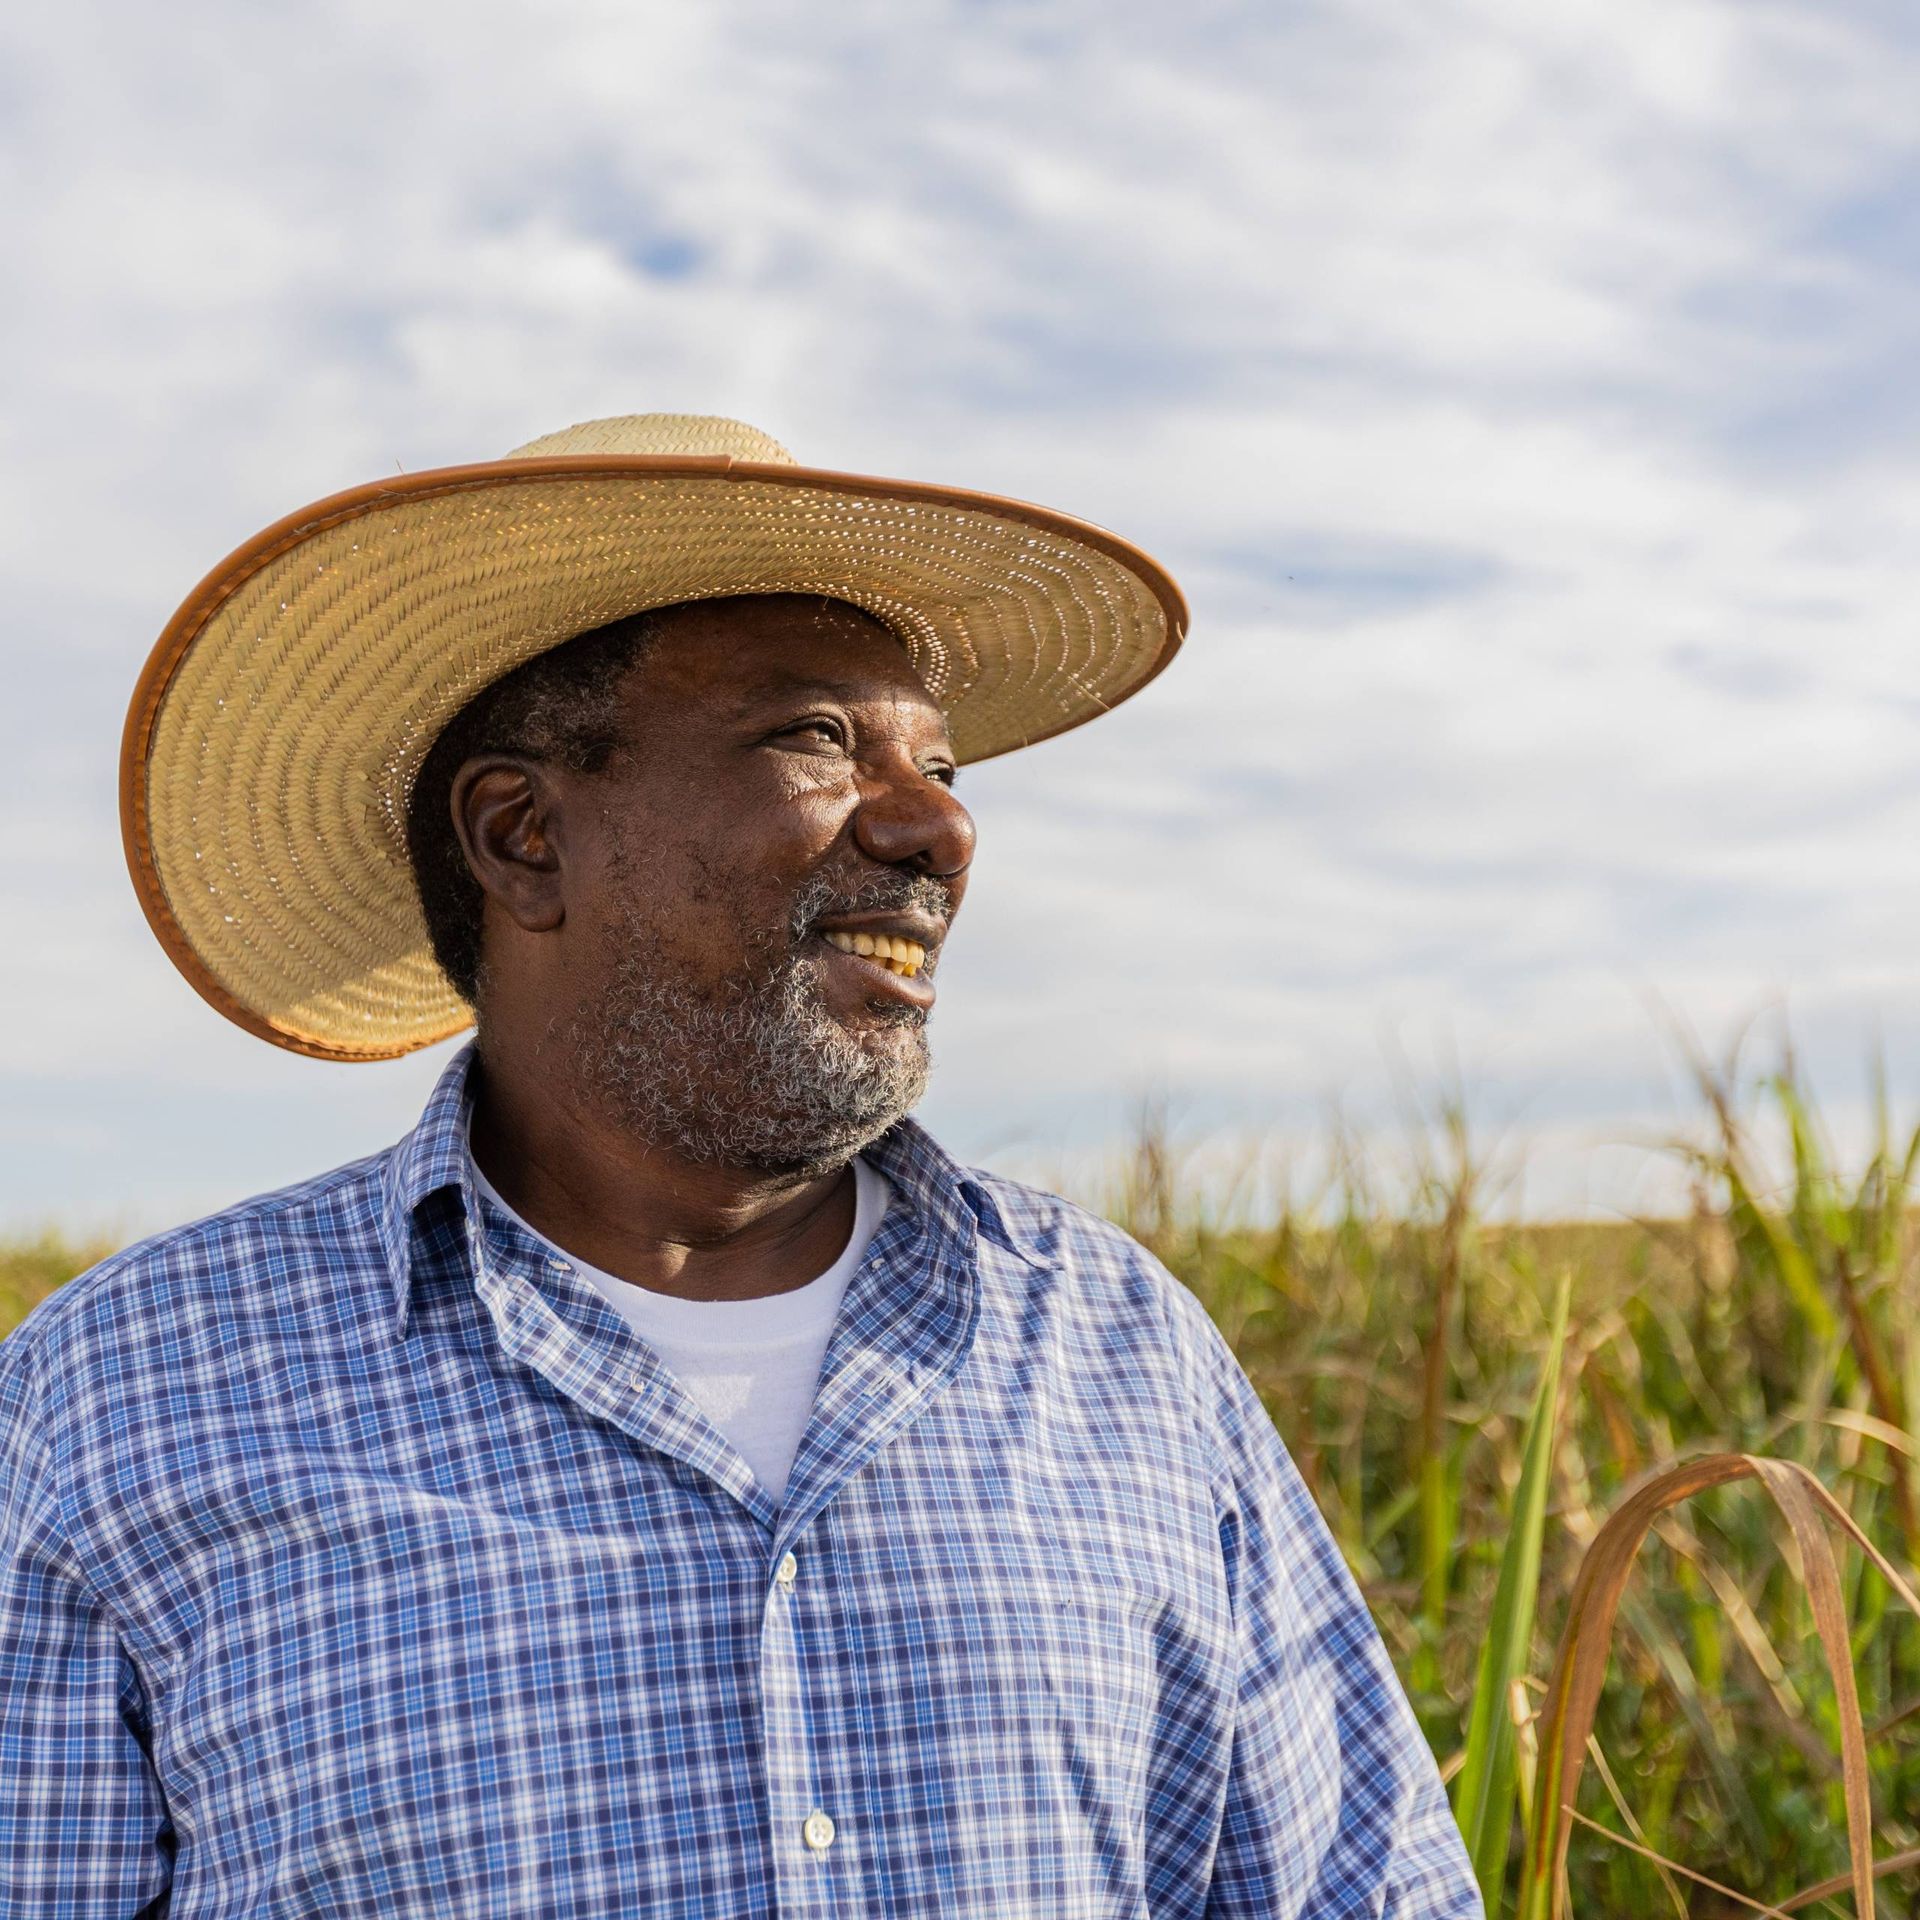 Image of a Brazilian farmer in a field of sugar cane